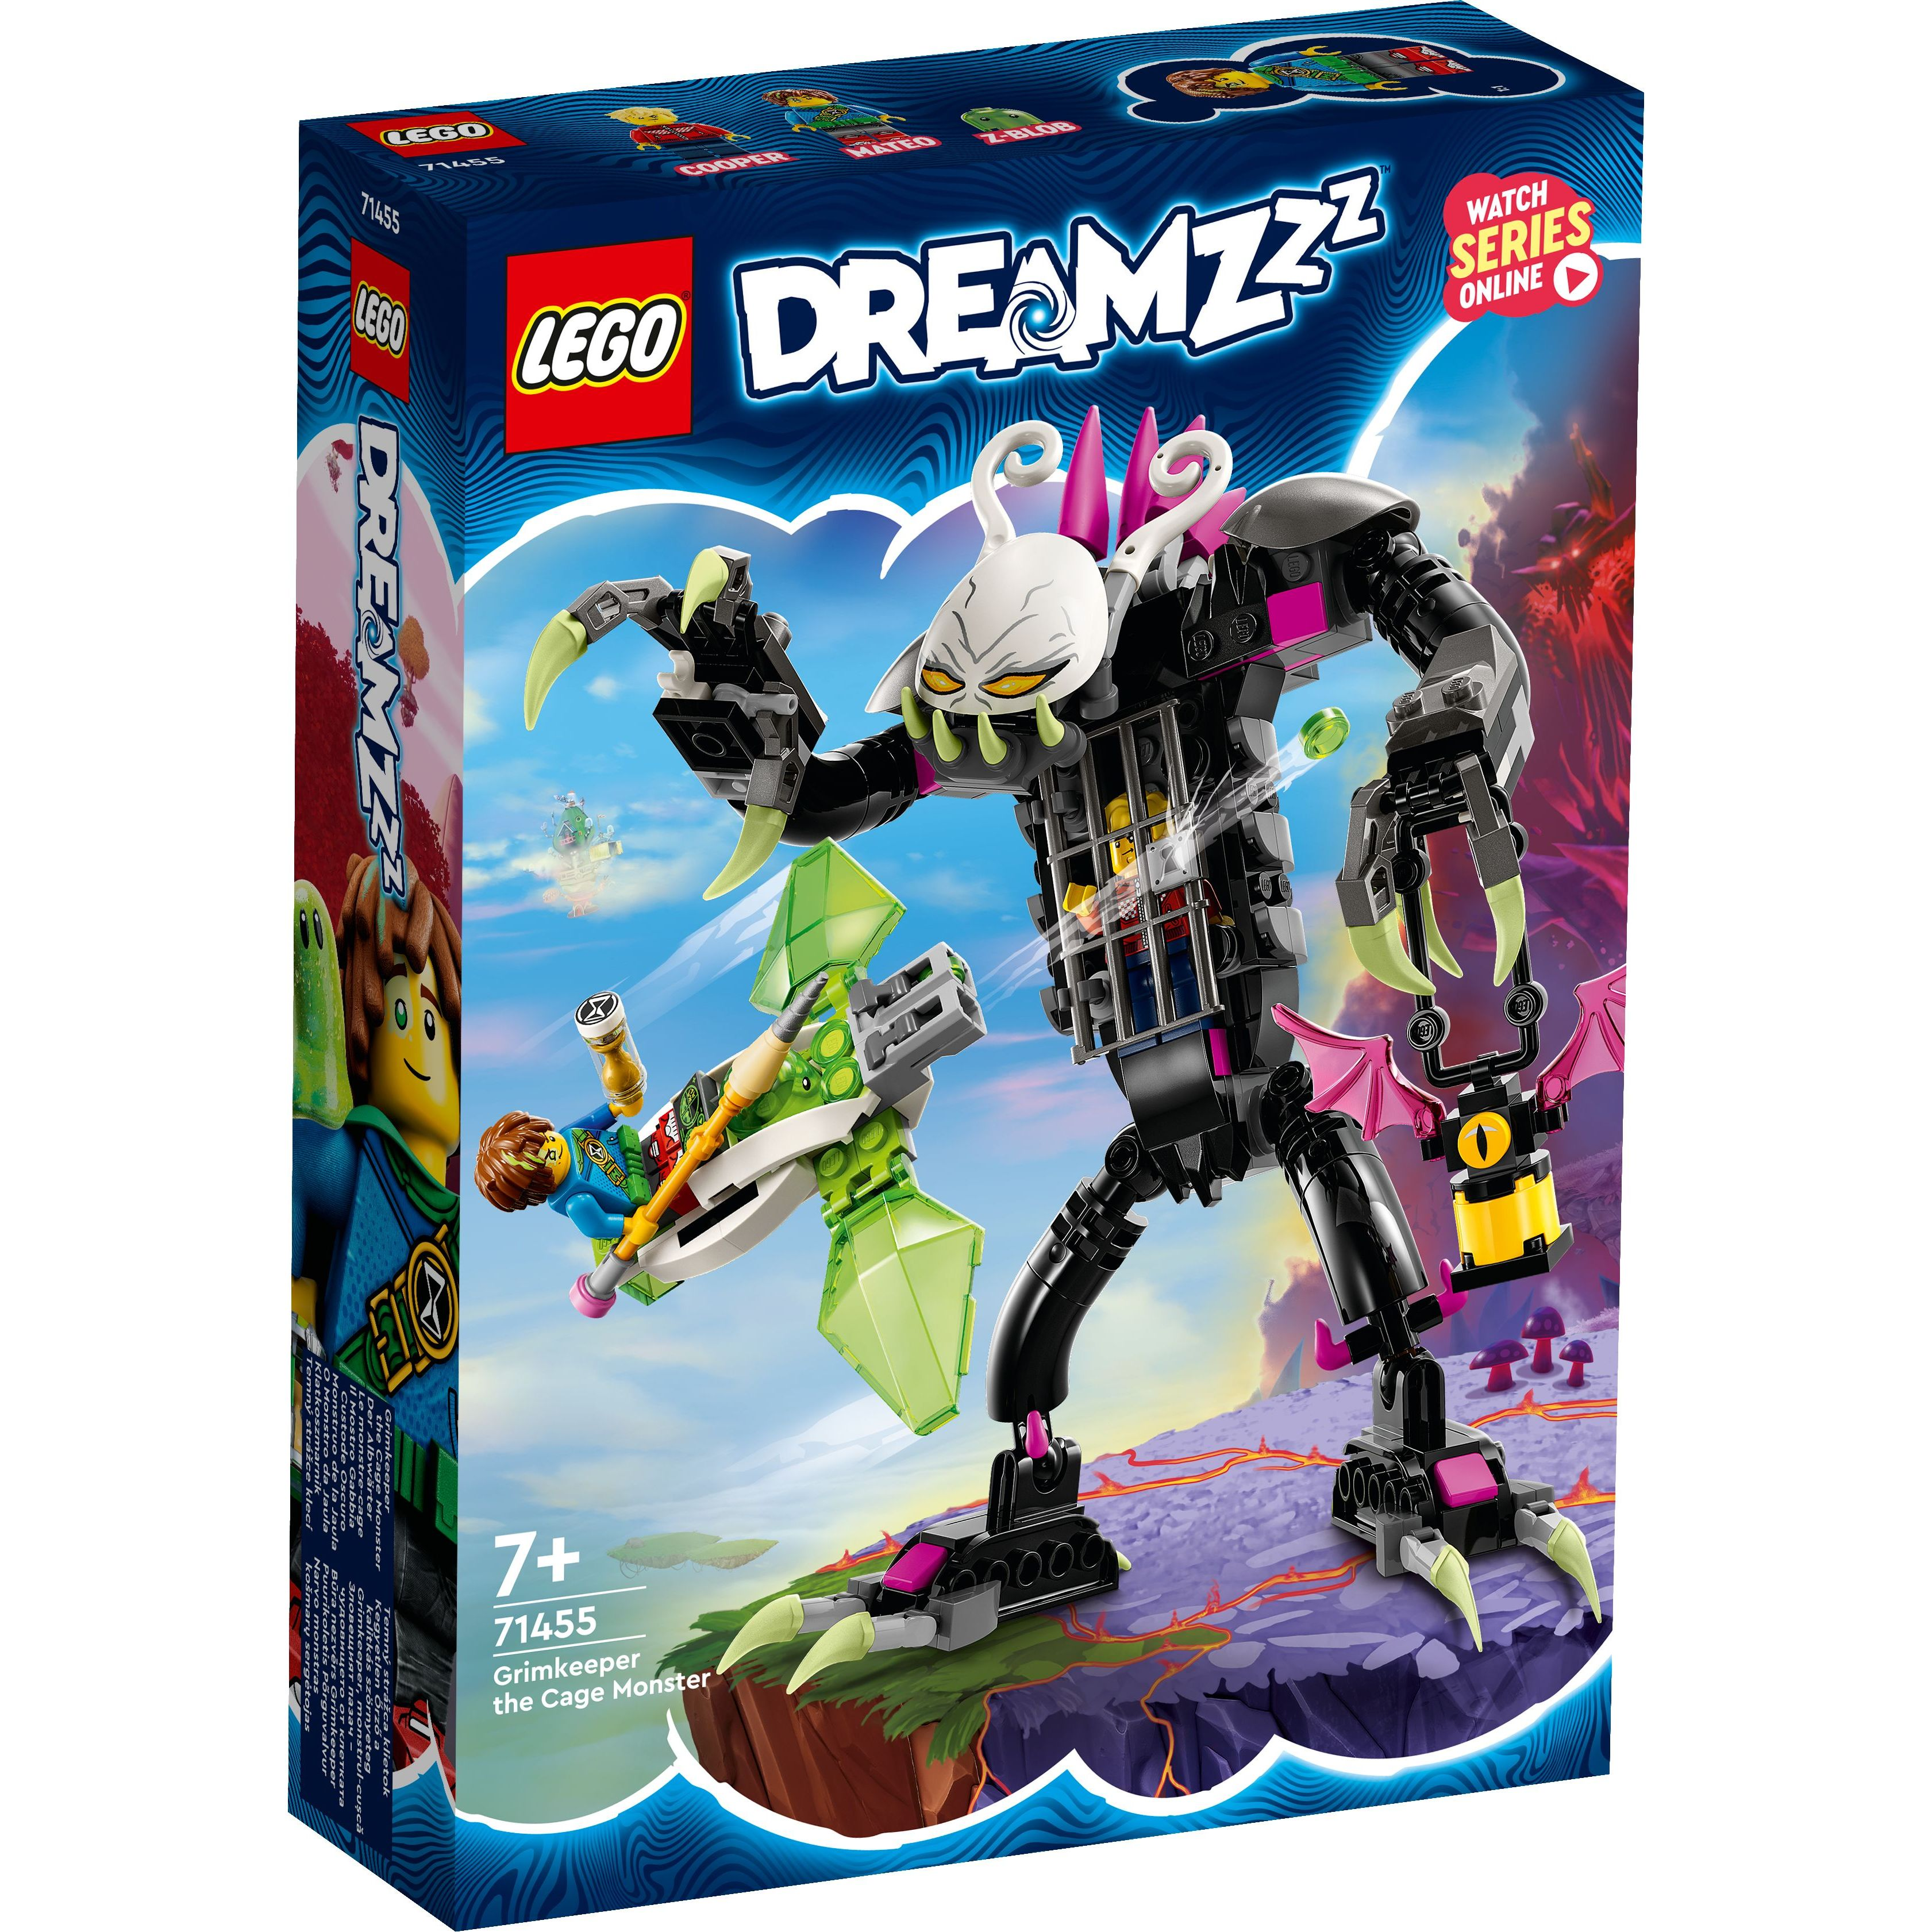 LEGO 71455 Dreamzzz Гримкипер, монстр с клеткой фото 1